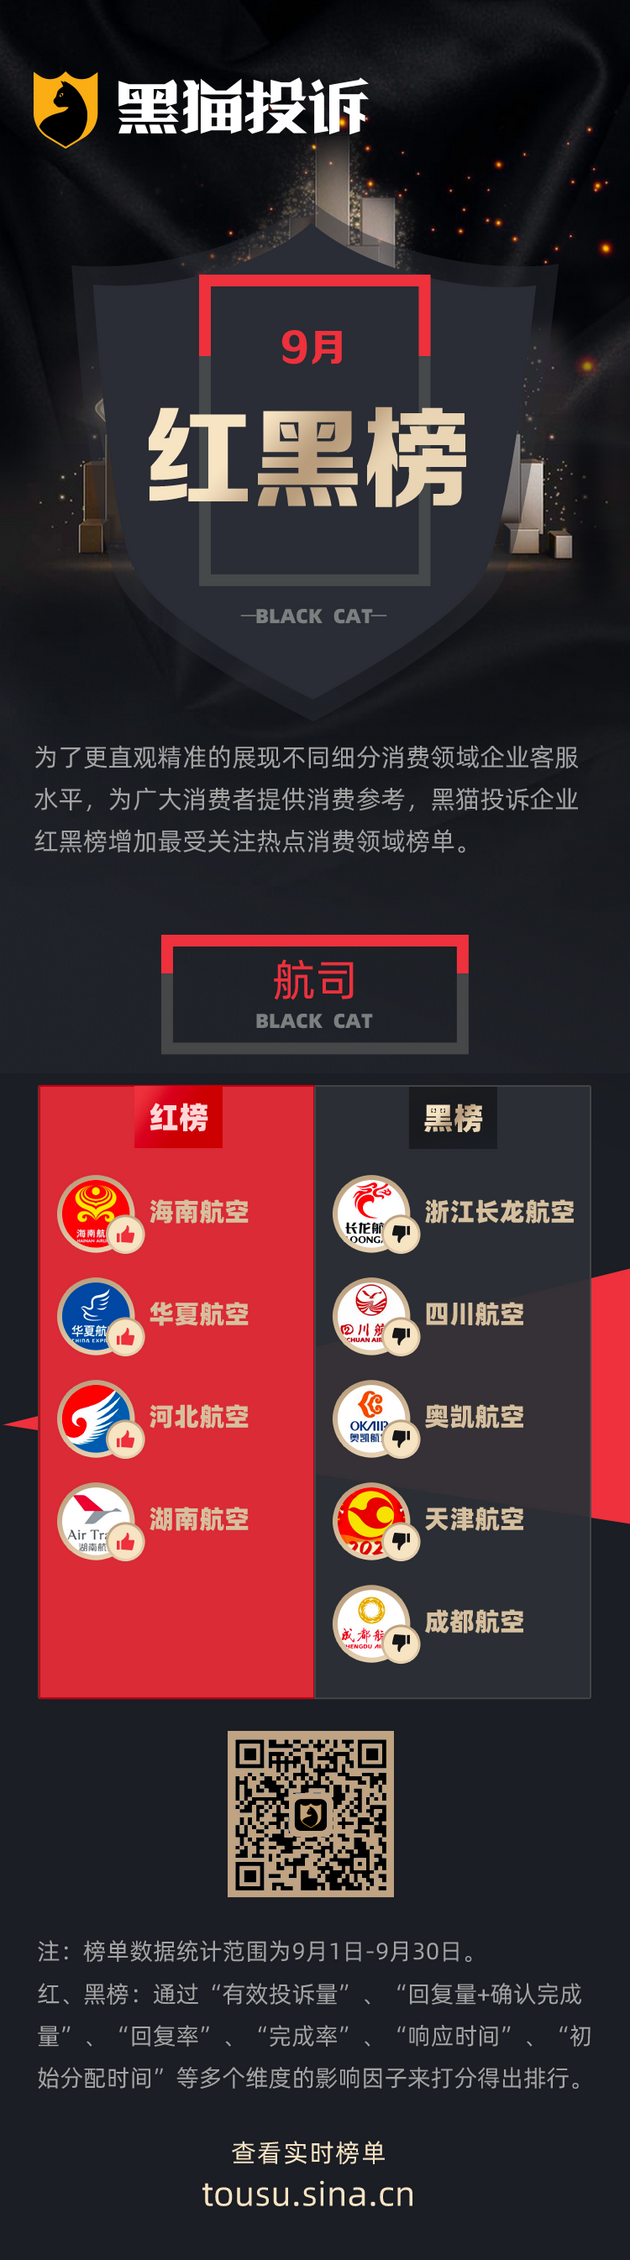 9月黑猫投诉航司领域红黑榜——浙江长龙航空退票难